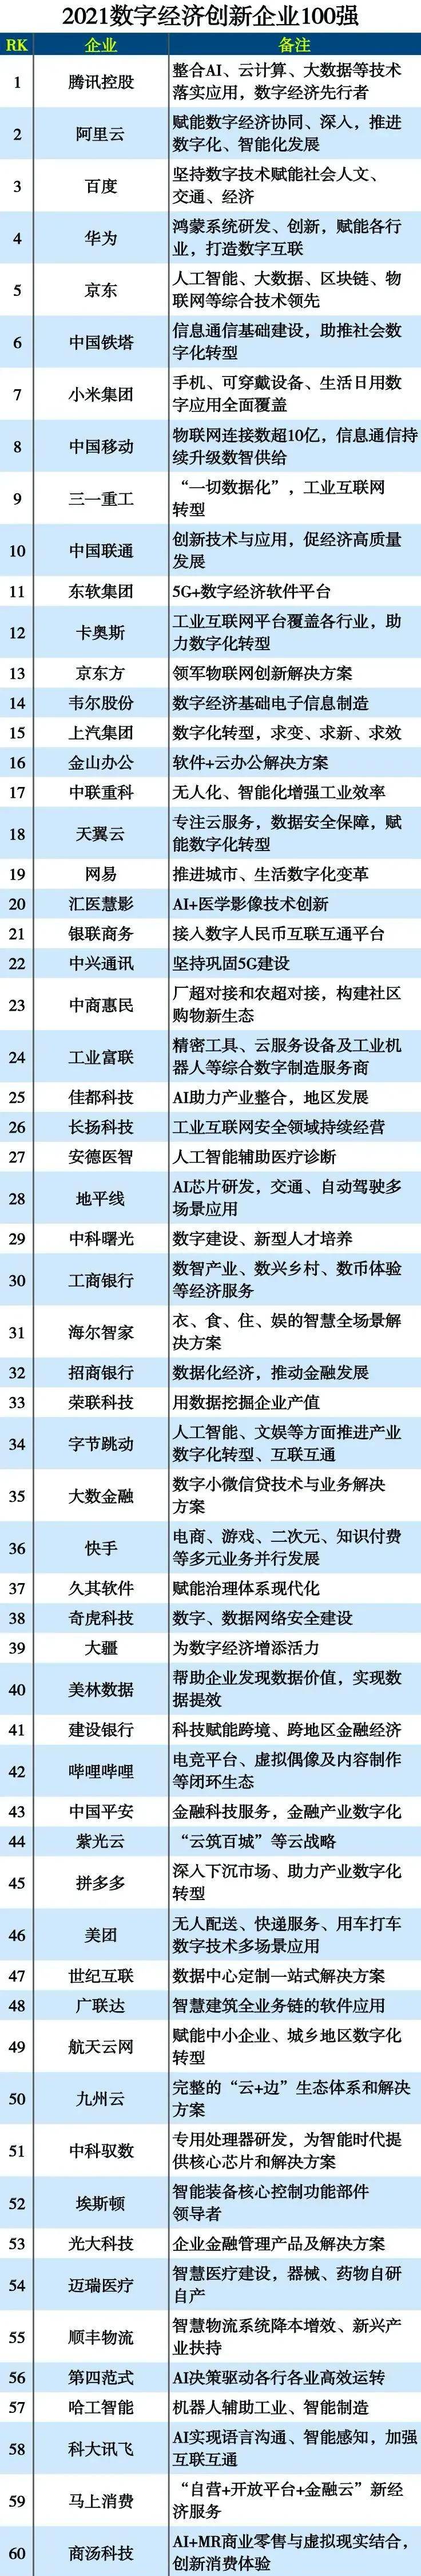 九州云入选2021数字经济创新企业百强榜！ 